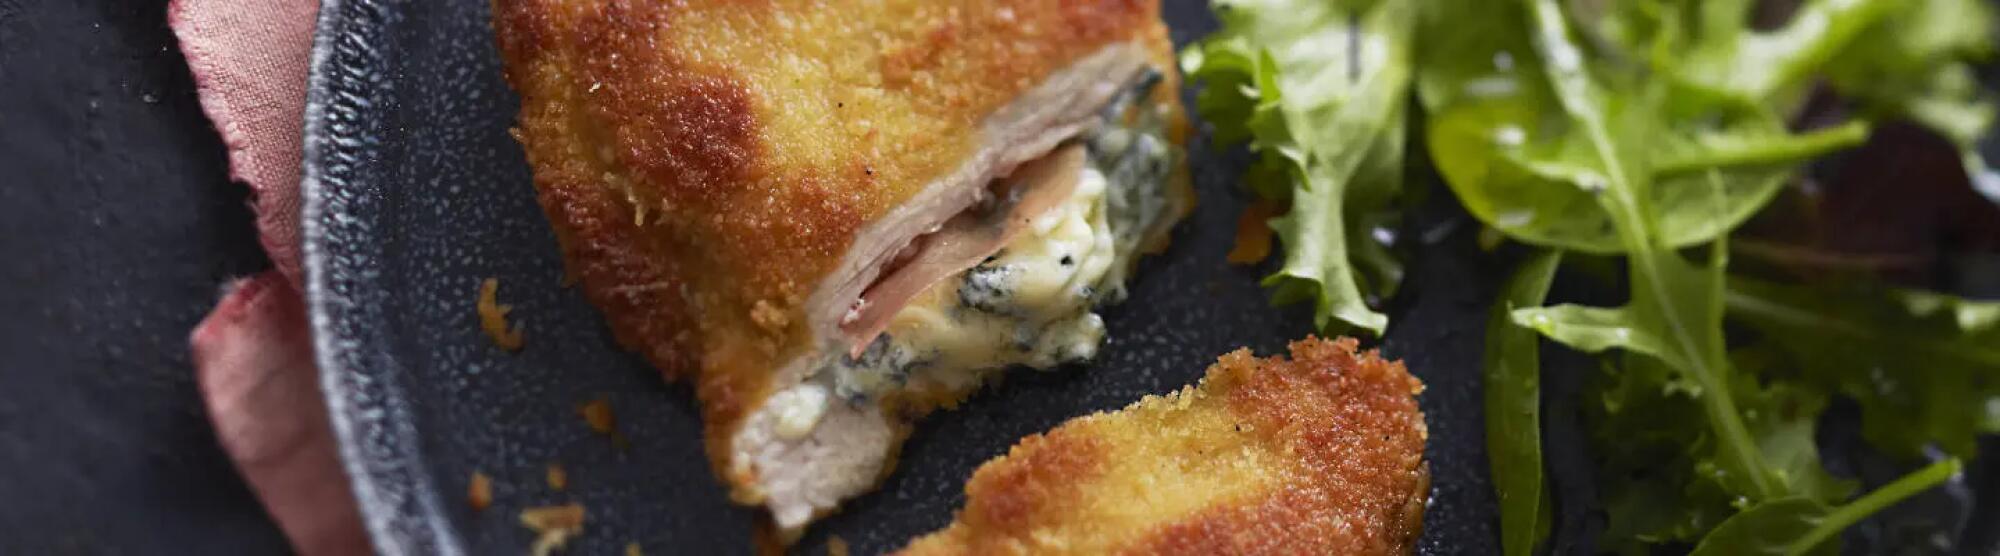 Recette : Escalope milanaise au jambon de Parme et fromage bleu